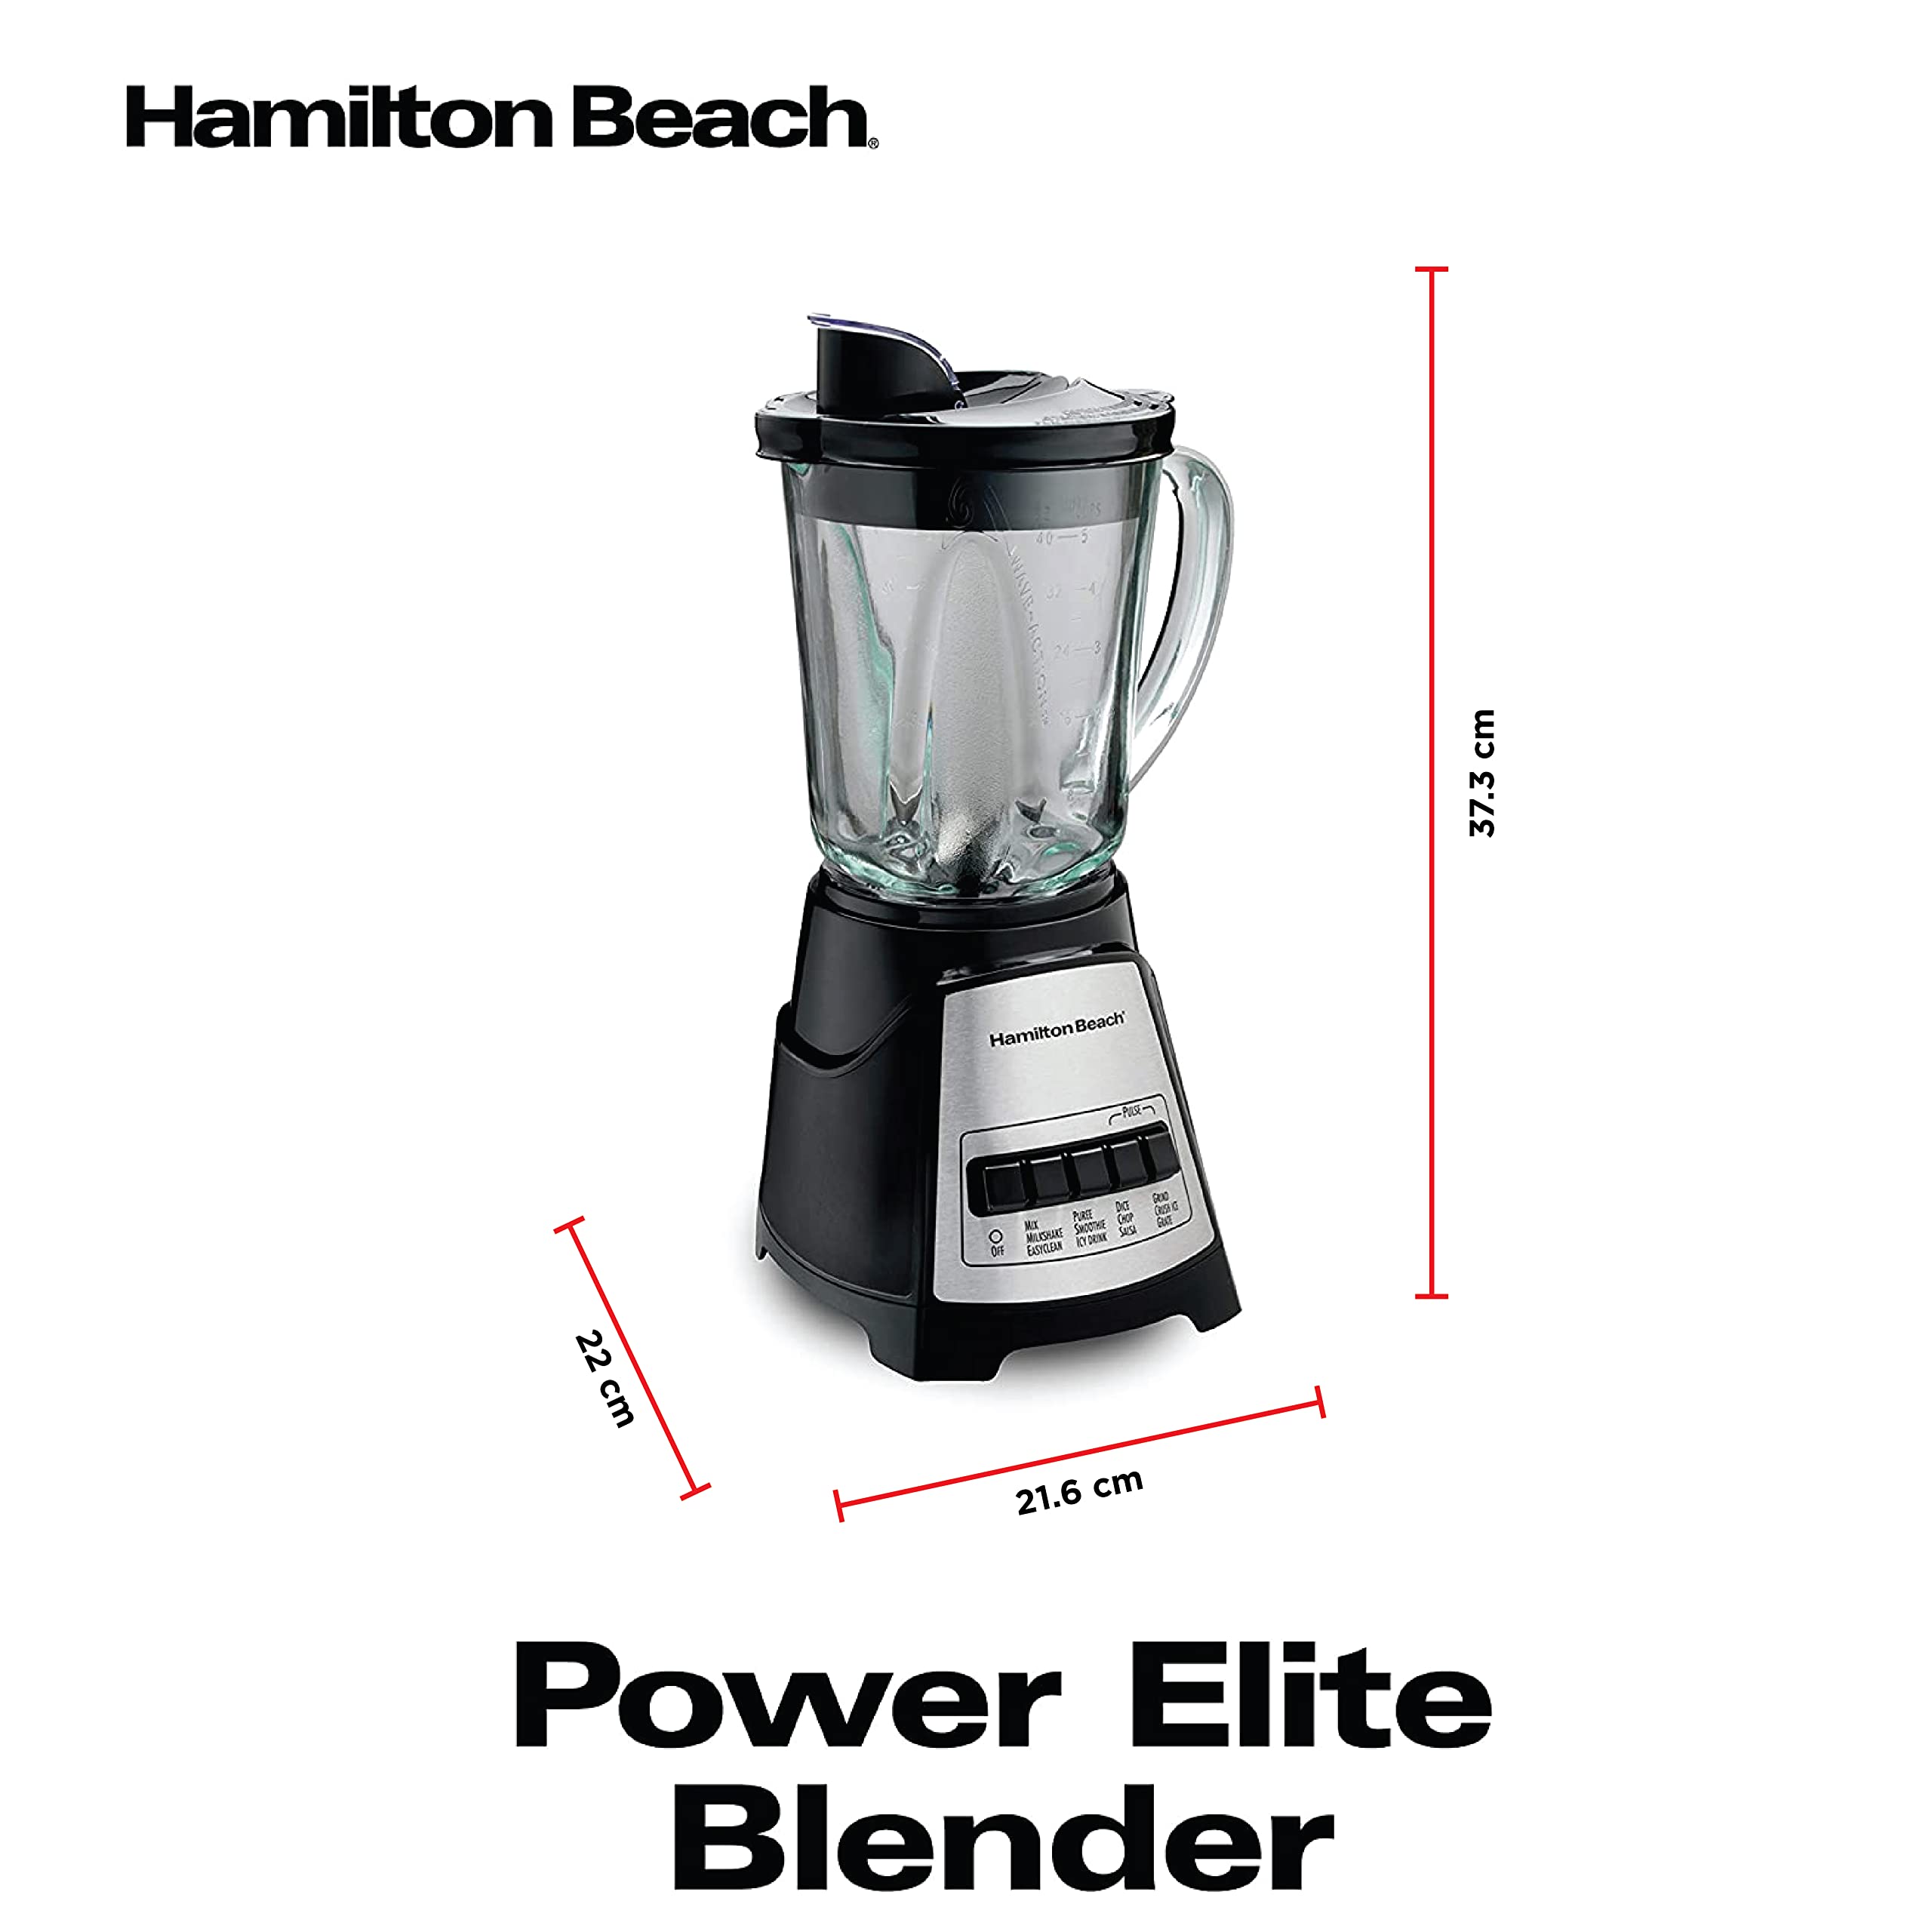 Hamilton Beach 1.4L Multiblend Blender With 12 Functions For Puree, Crush Ice هاملتون بيتش خلاط متعدد الخلطات سعة 1.4 لتر مع 12 وظيفة للهرس وسحق الثلج والمخفوق والسموذي